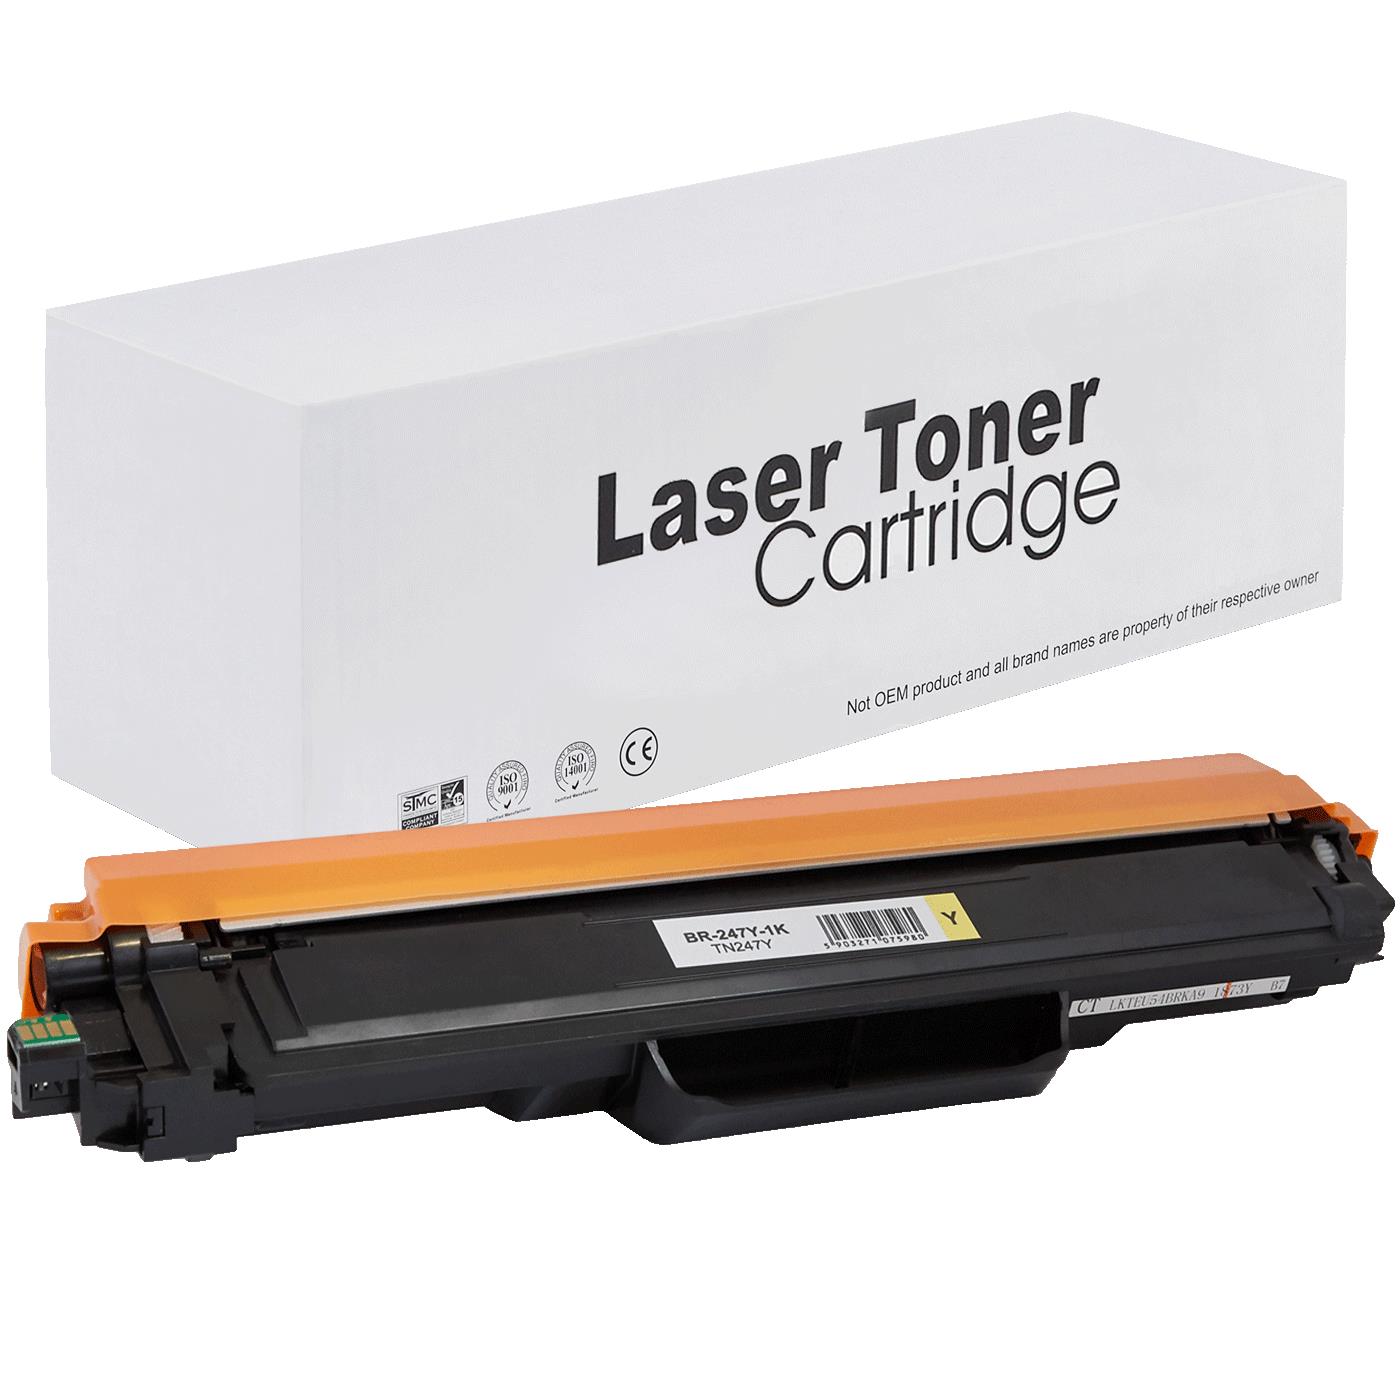 съвместима тонер касета за принтери и печатащи устройства на Brother MFC-3750CDW Toner BR-247Y | TN247Y. Ниски цени, прецизно изпълнение, високо качество.